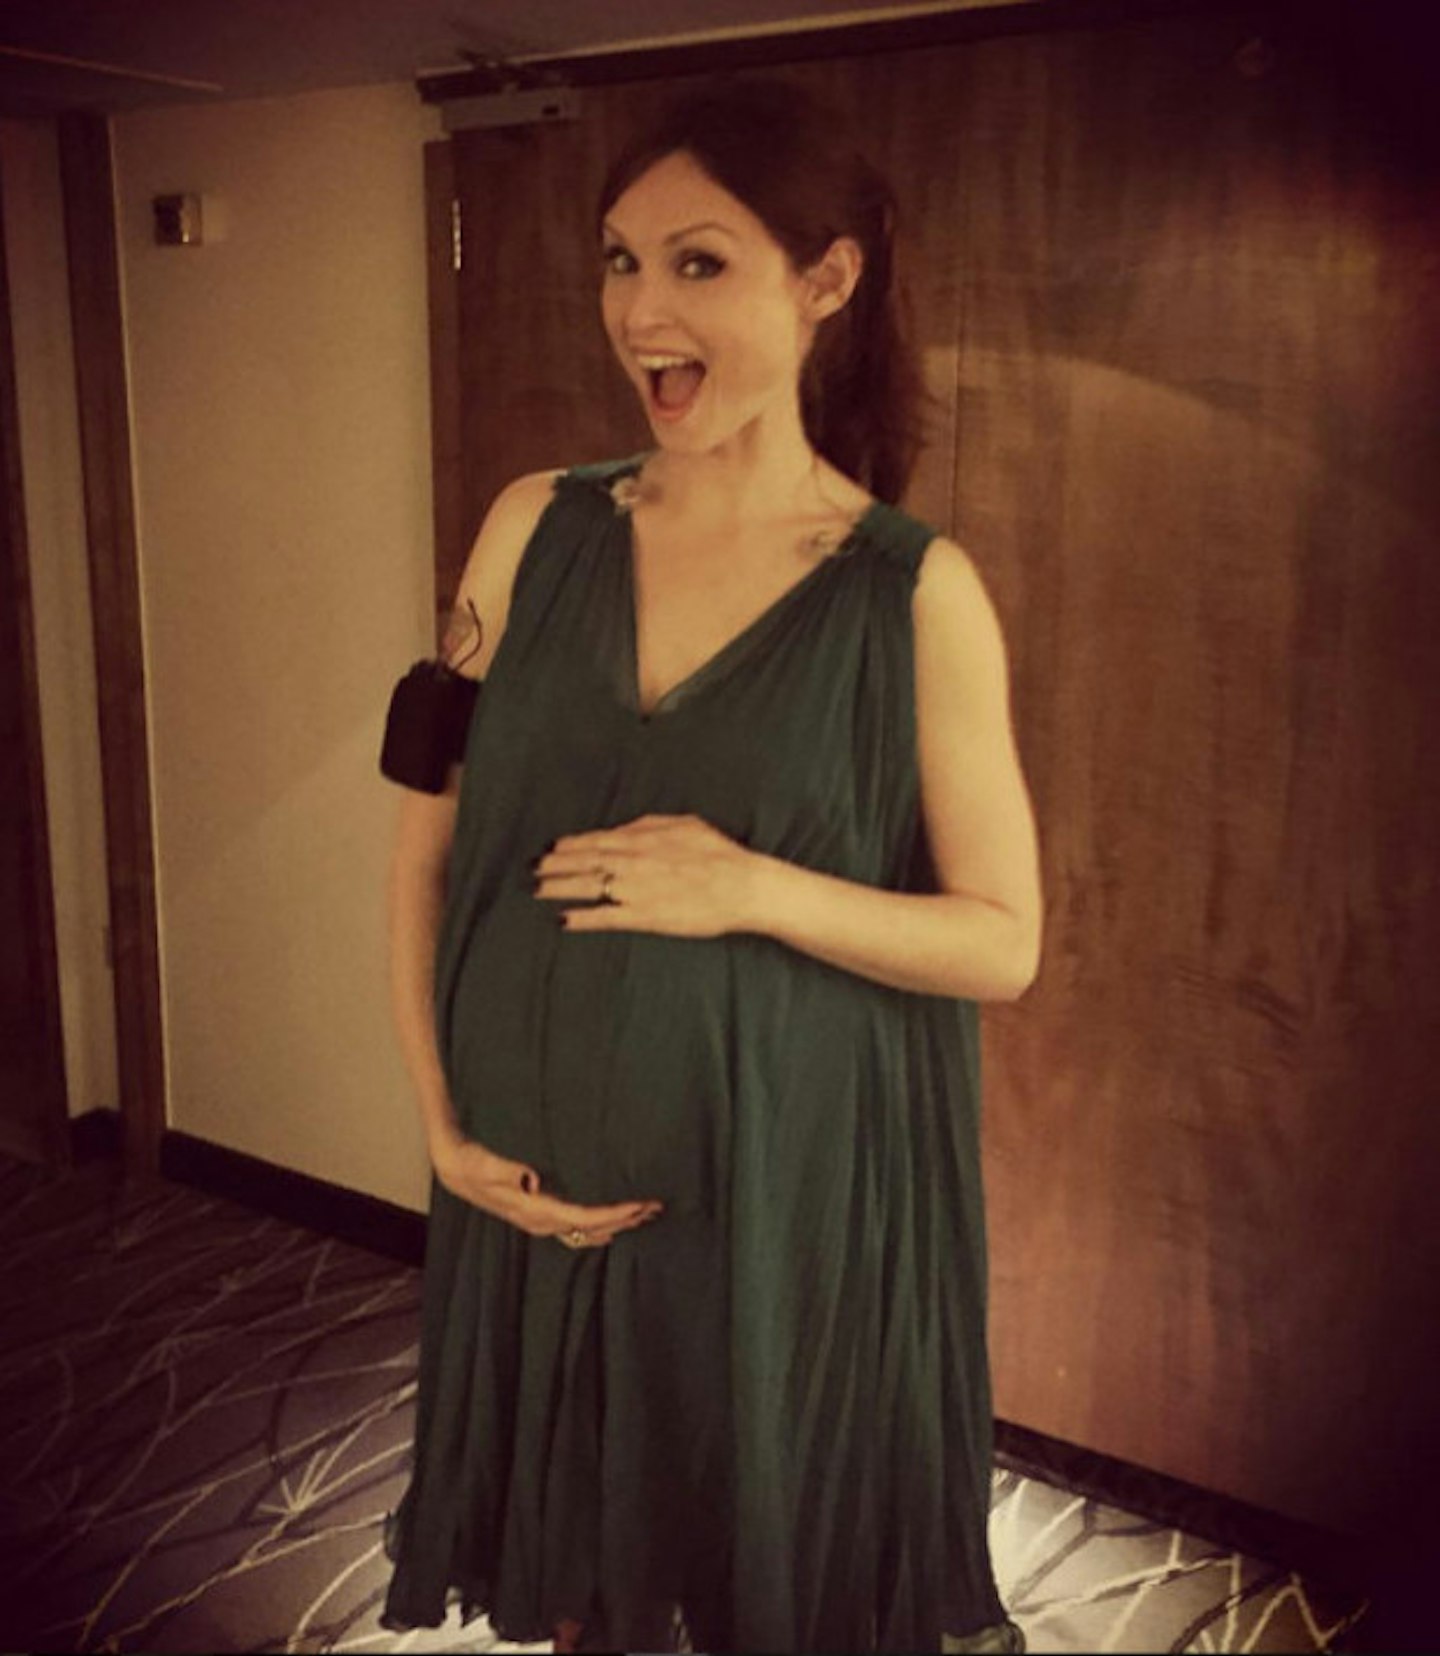 Sophie Ellis-Bextor pregnancy announcement